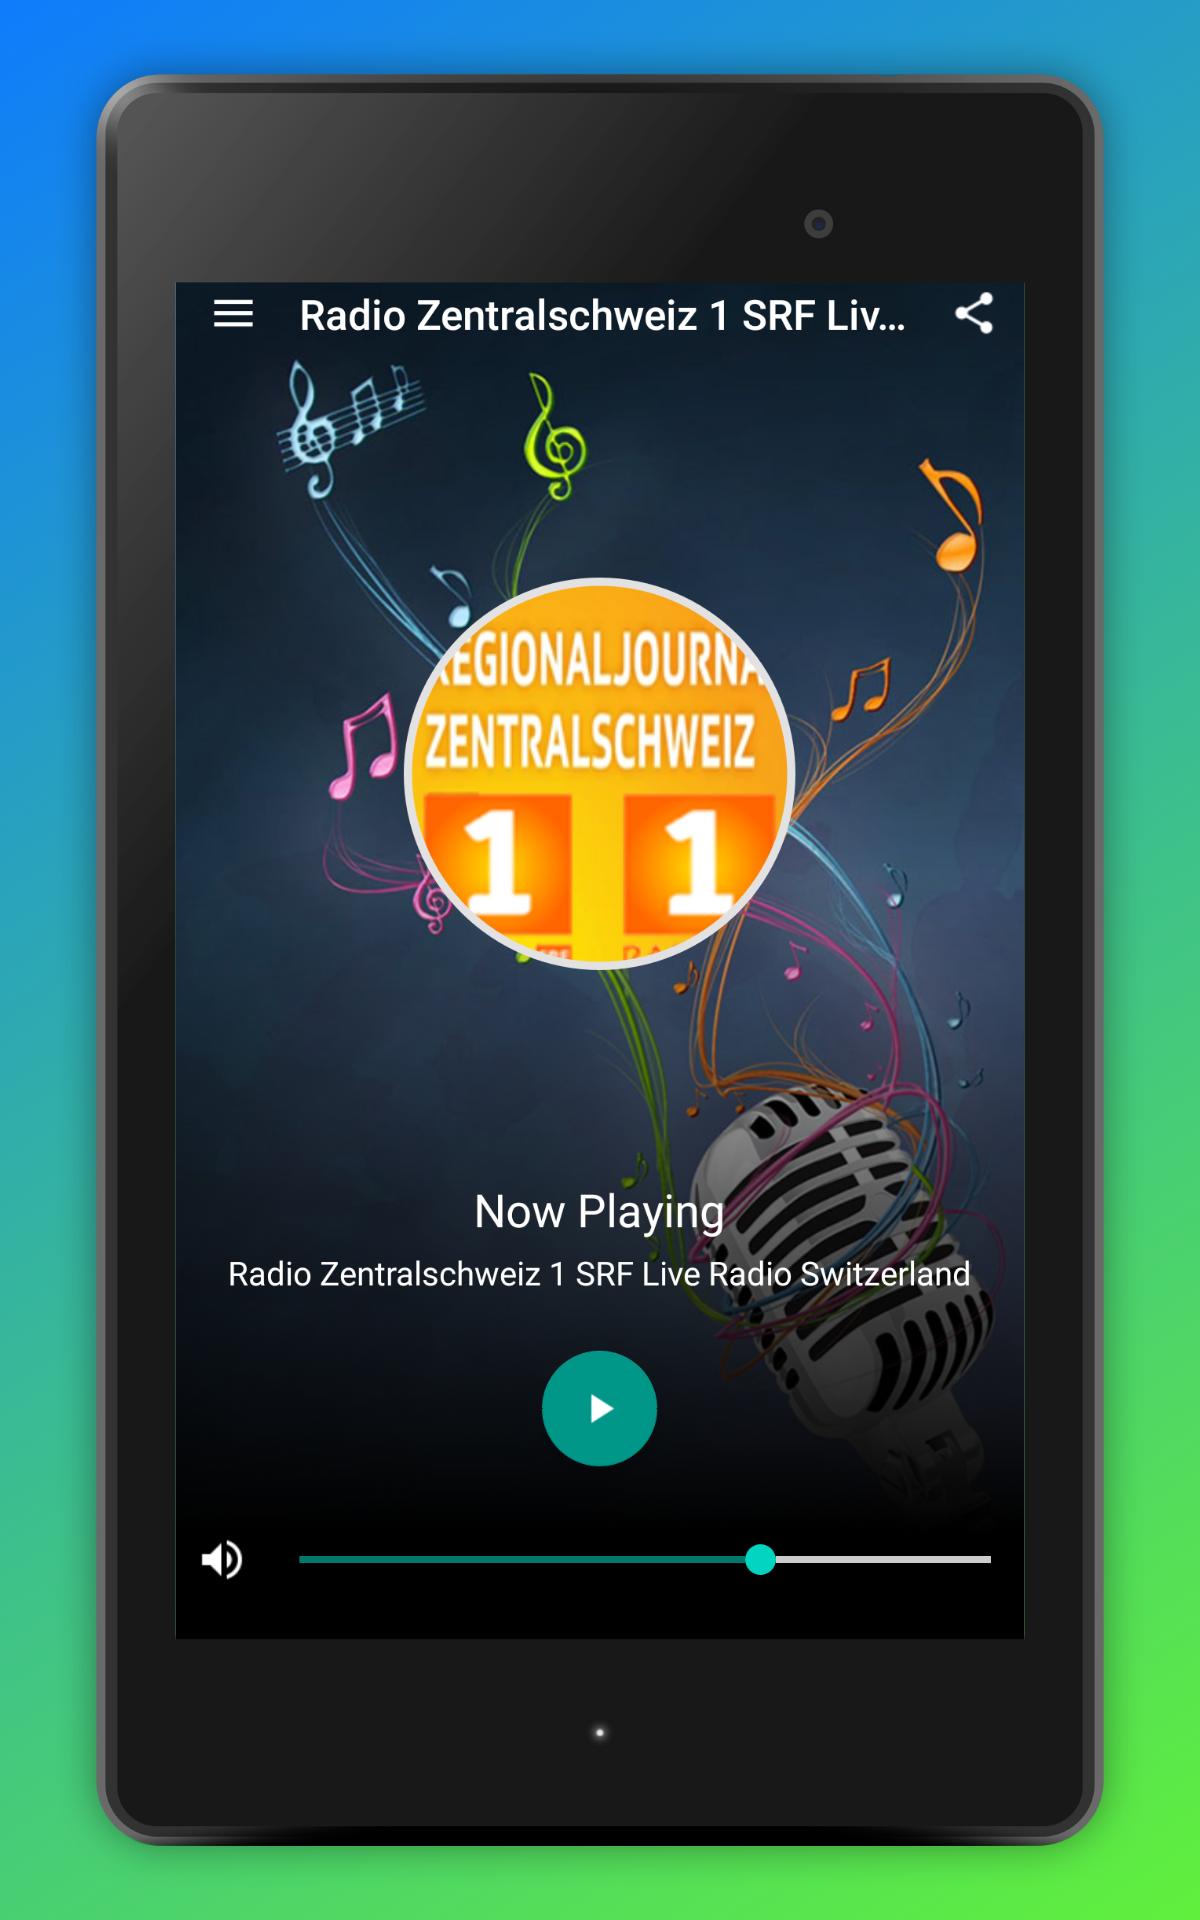 Radio Zentralschweiz 1 SRF Live Radio Switzerland for Android - APK Download